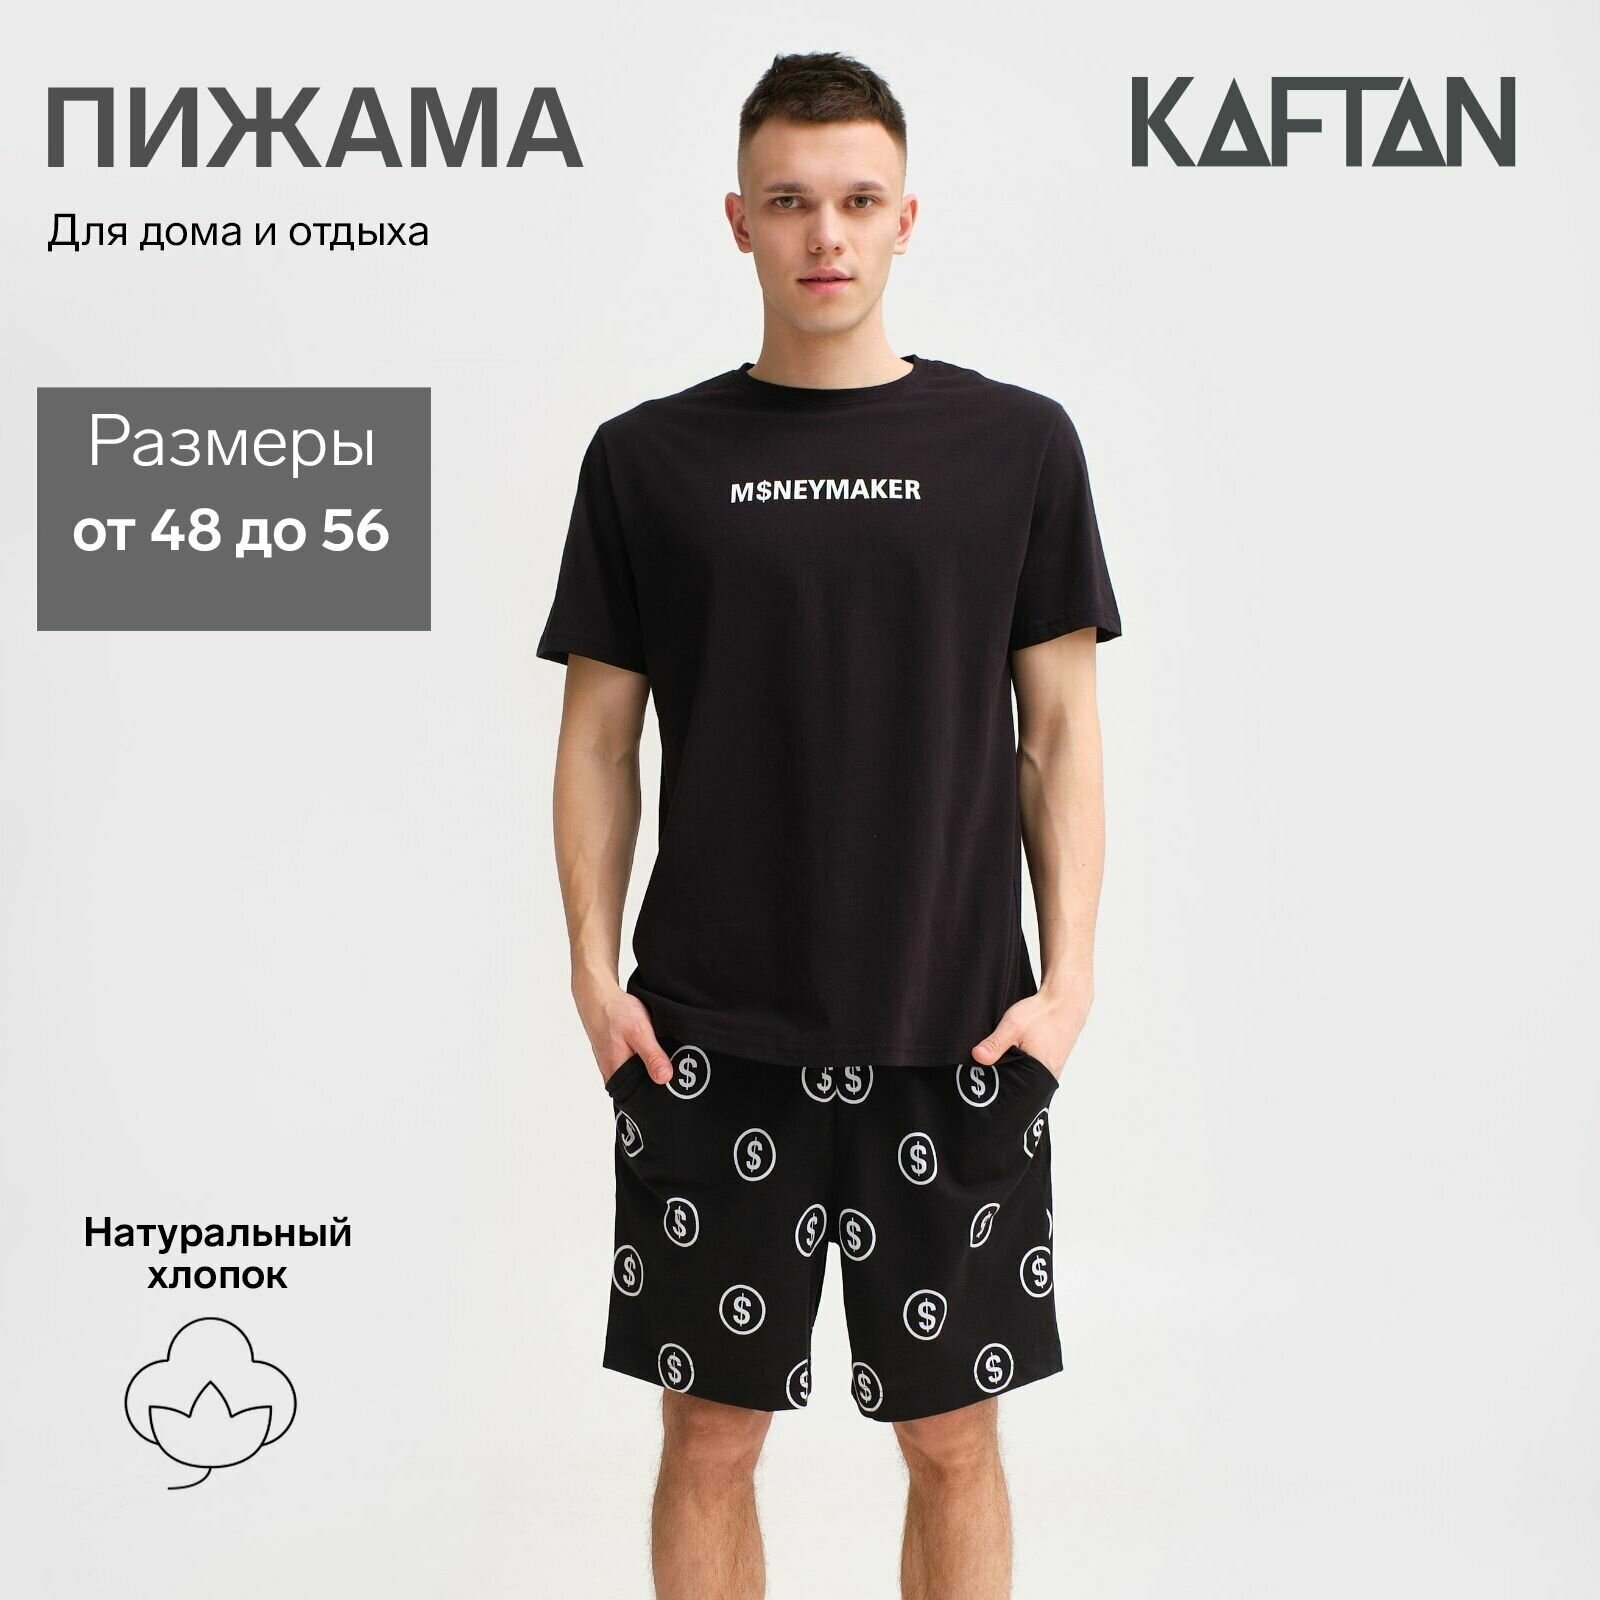 Пижама Kaftan, футболка, шорты, размер 50, черный - фотография № 1